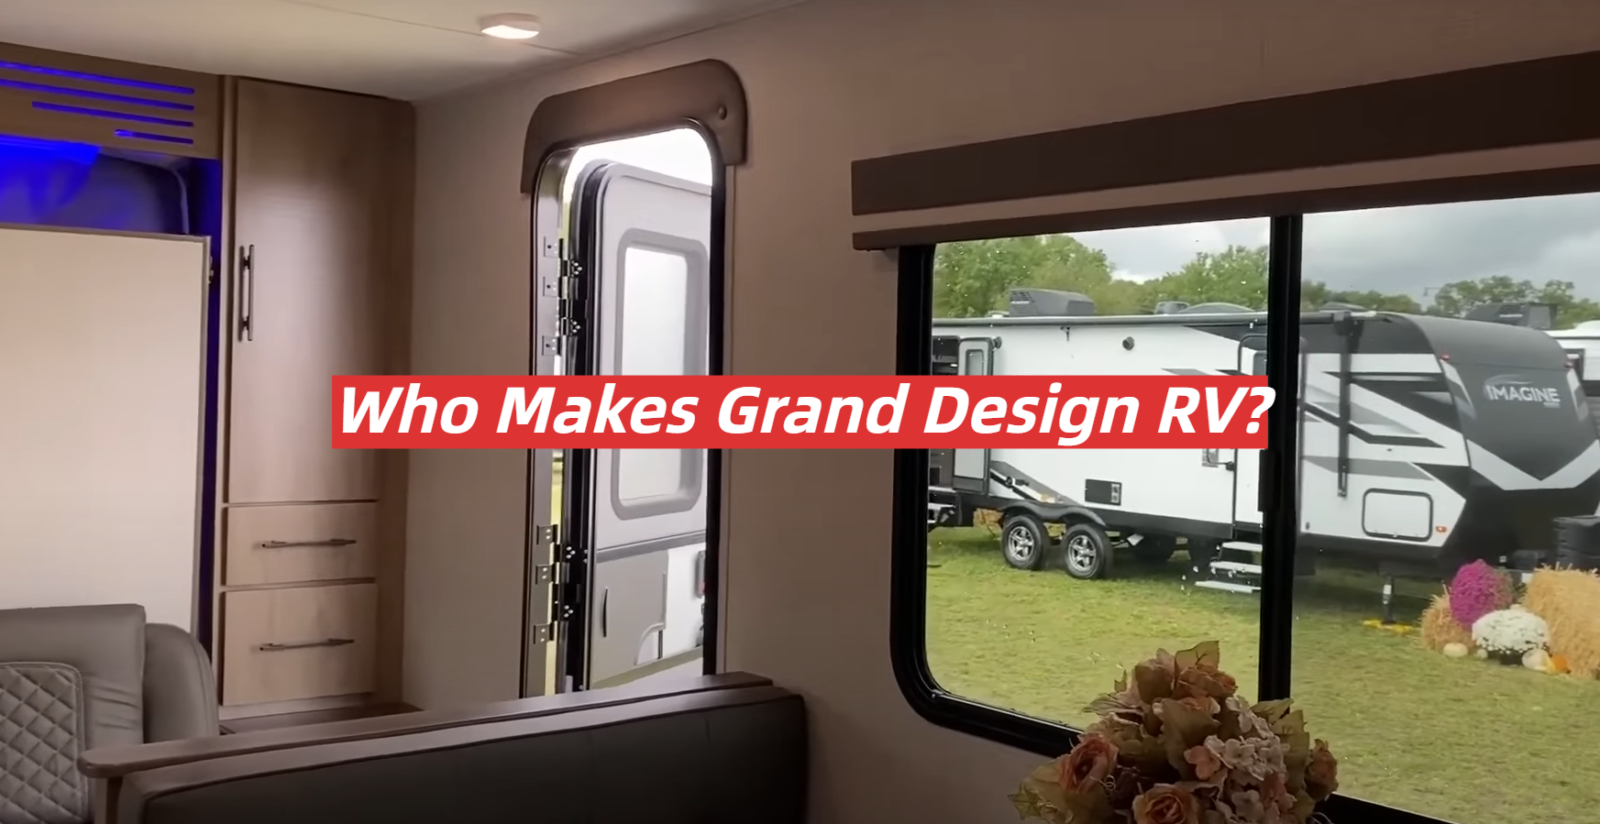 Who Makes Grand Design RV?